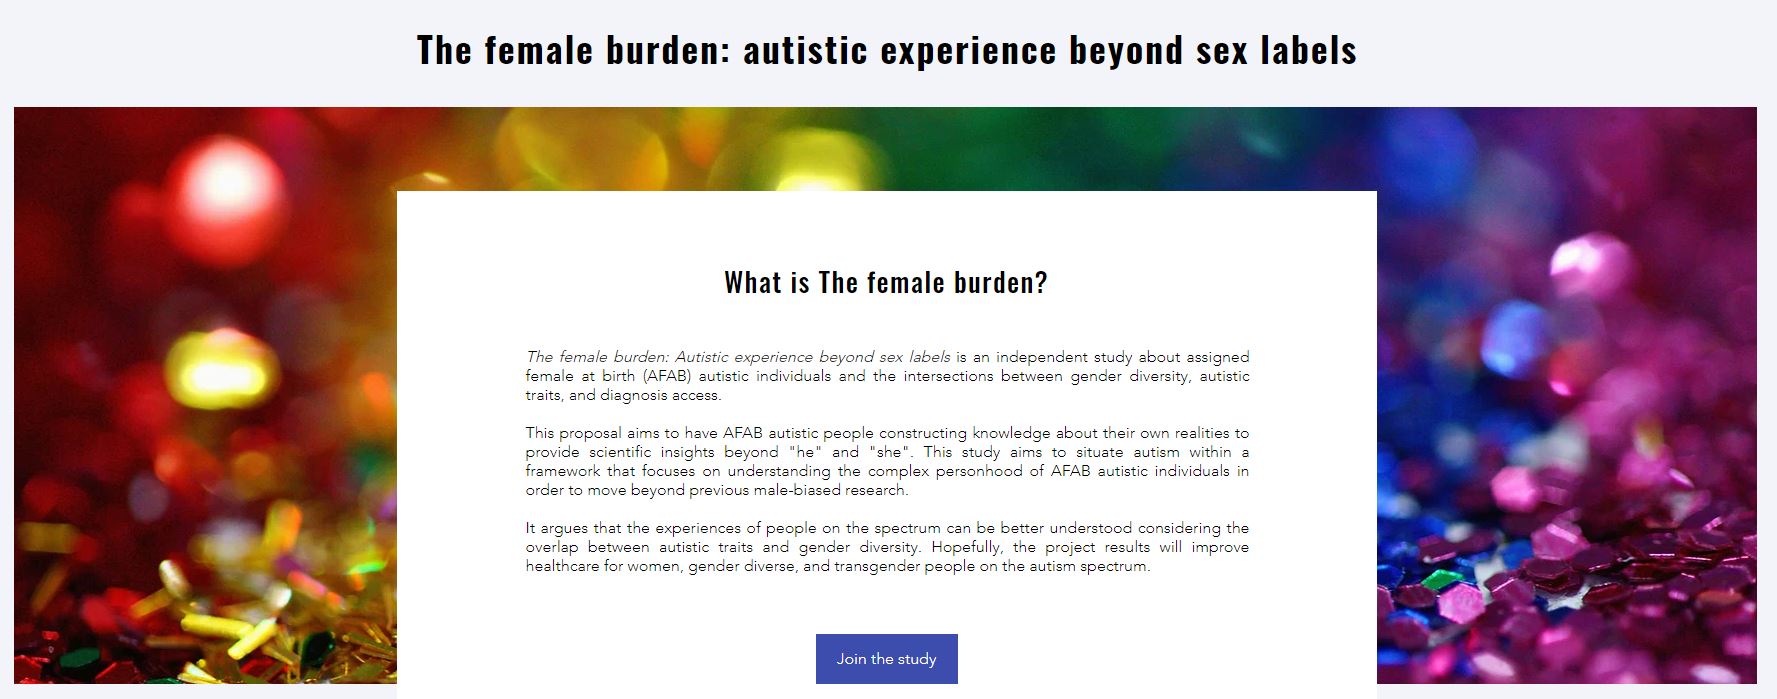 The Female Burden: a experiência autista além dos rótulos de sexo é um estudo independente sobre indivíduos autistas designados do sexo feminino no nascimento (AFAB) e as interseções entre a diversidade de gênero, traços autistas e acesso ao diagnóstico